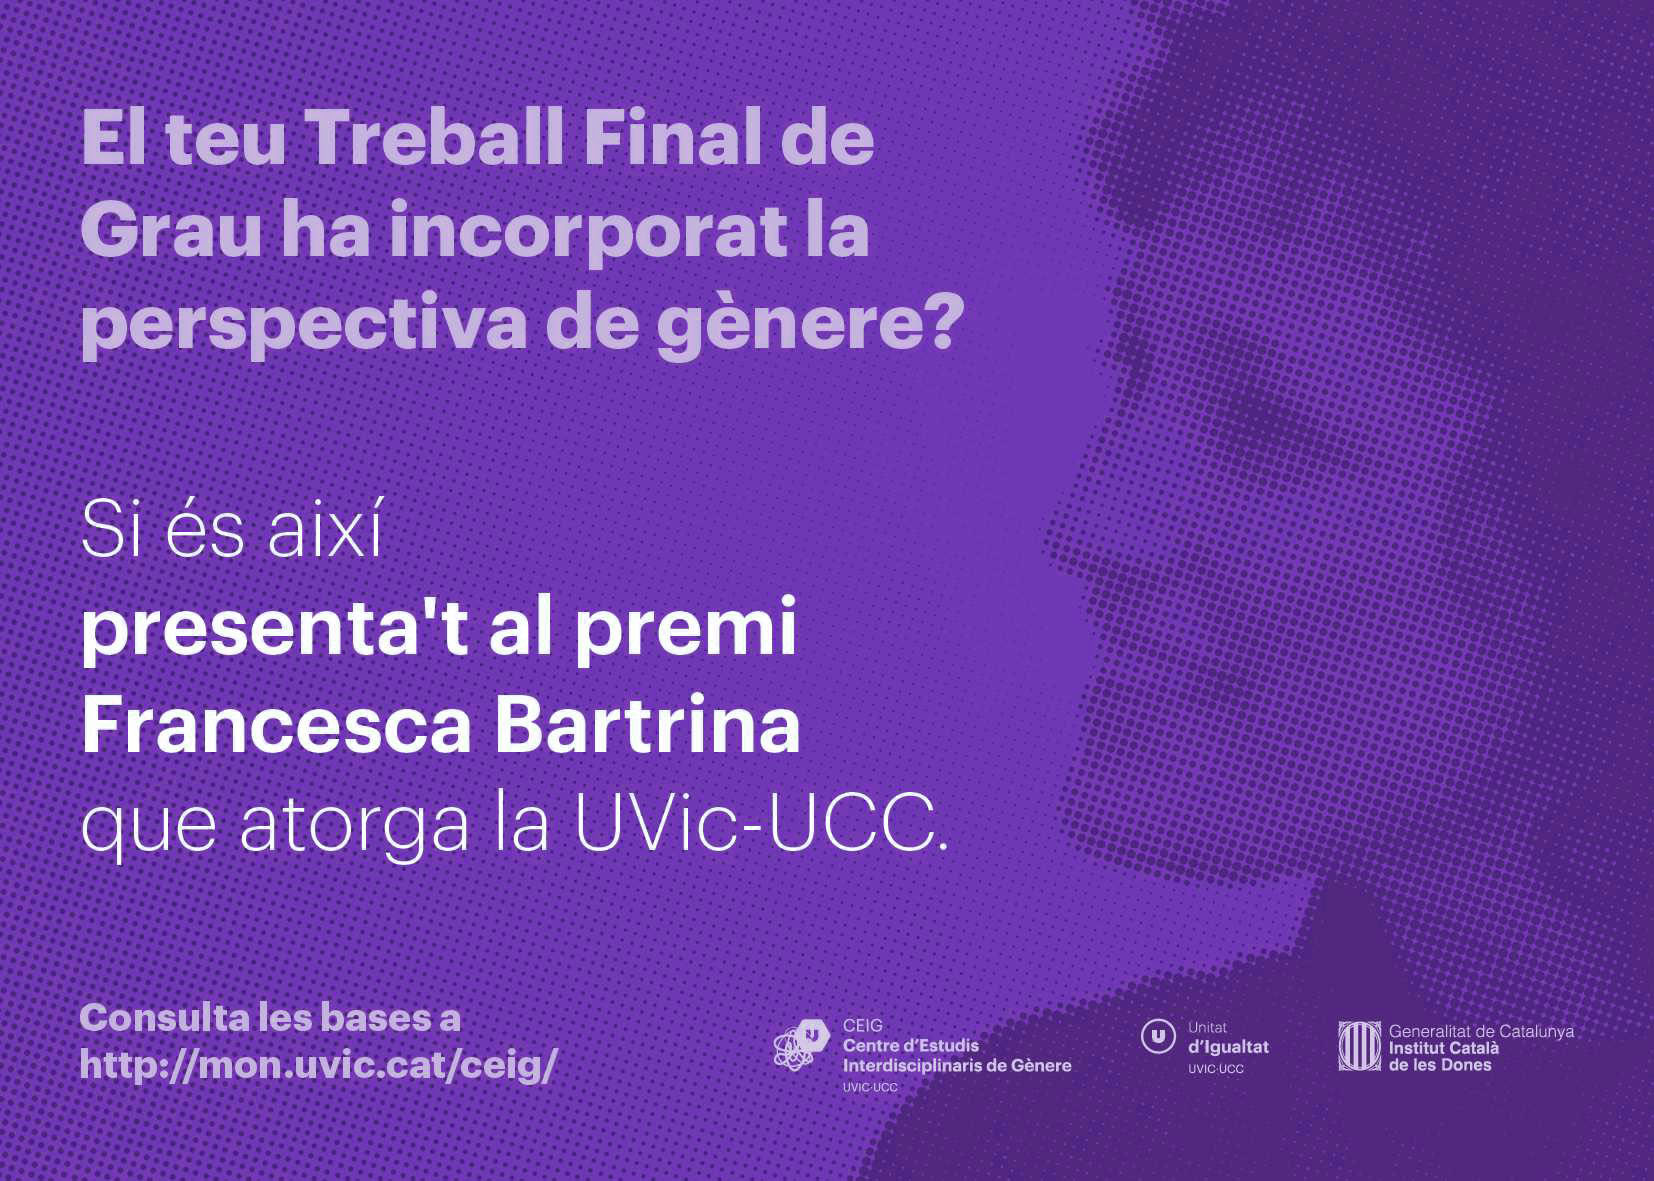 Setena edició del Premi Francesca Bartrina al millor Treball de Final de Grau en estudis de gènere - Centre d'Estudis Interdisciplinaris de Gènere